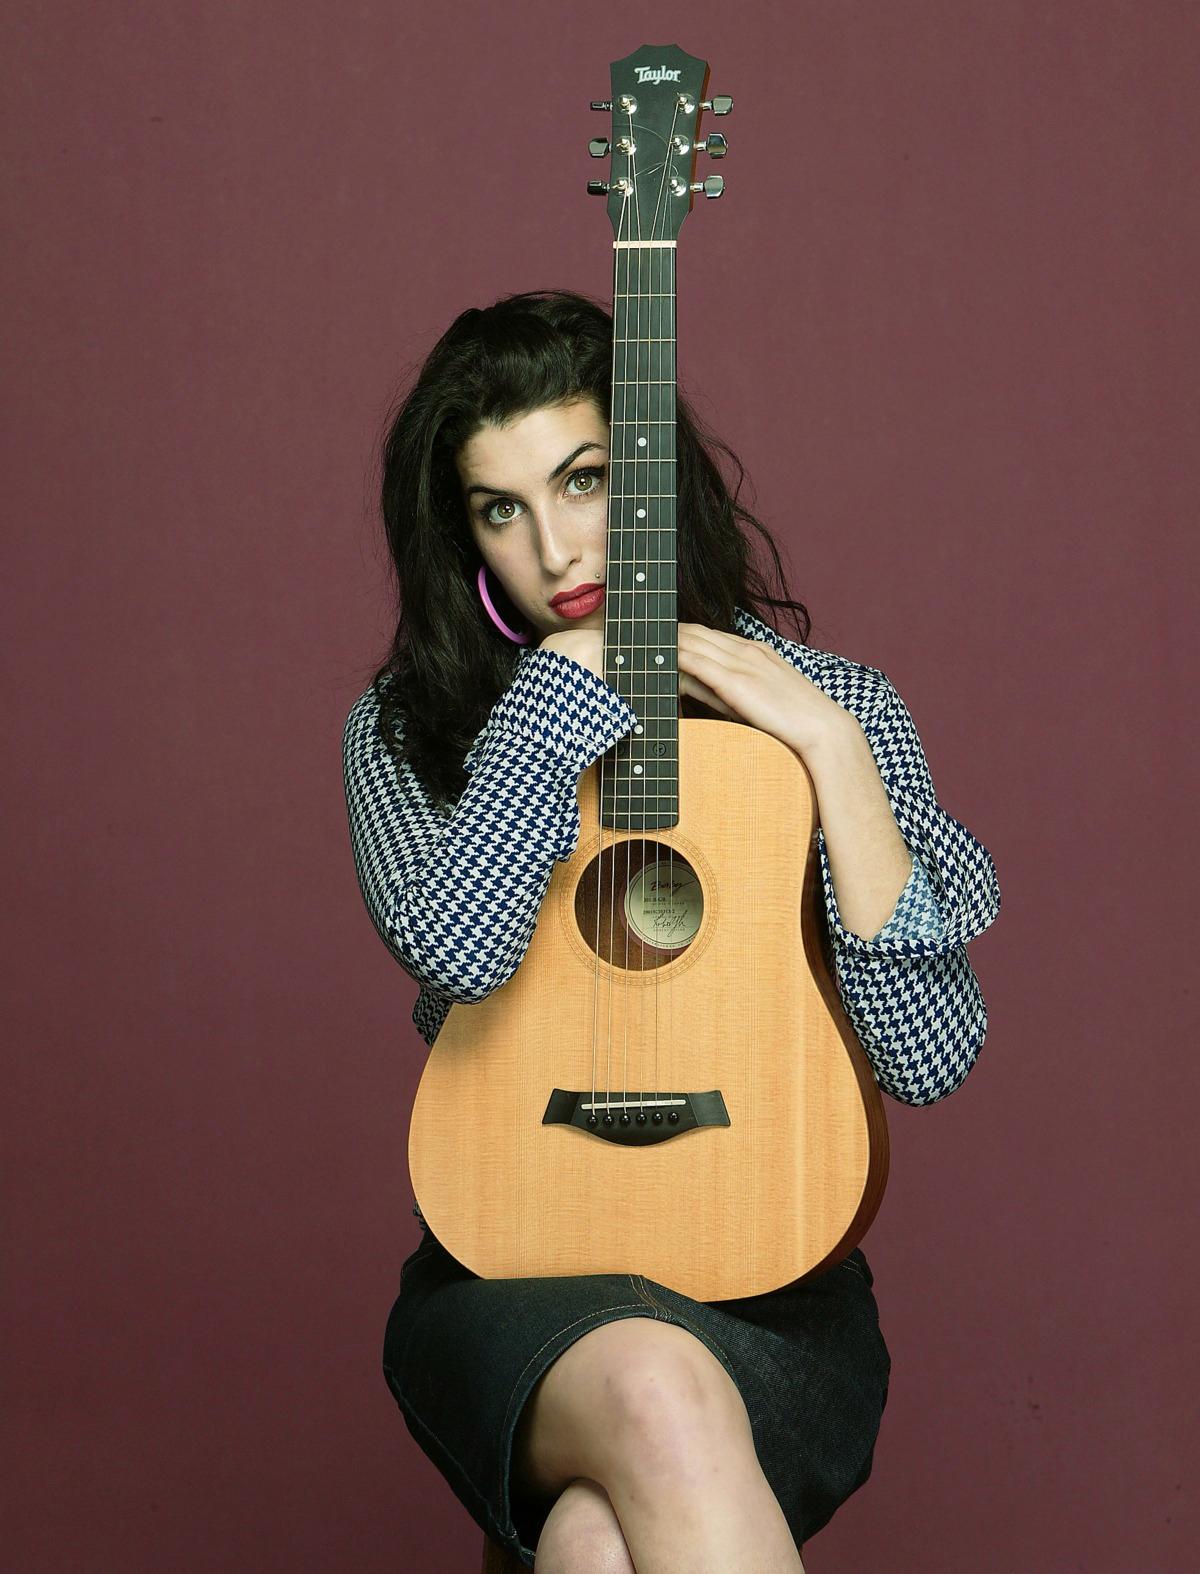 2004 - FÖRSTA SKIVAN En 20-årig och oförstörd Amy Winehouse släppte sin första skiva ”Frank”.